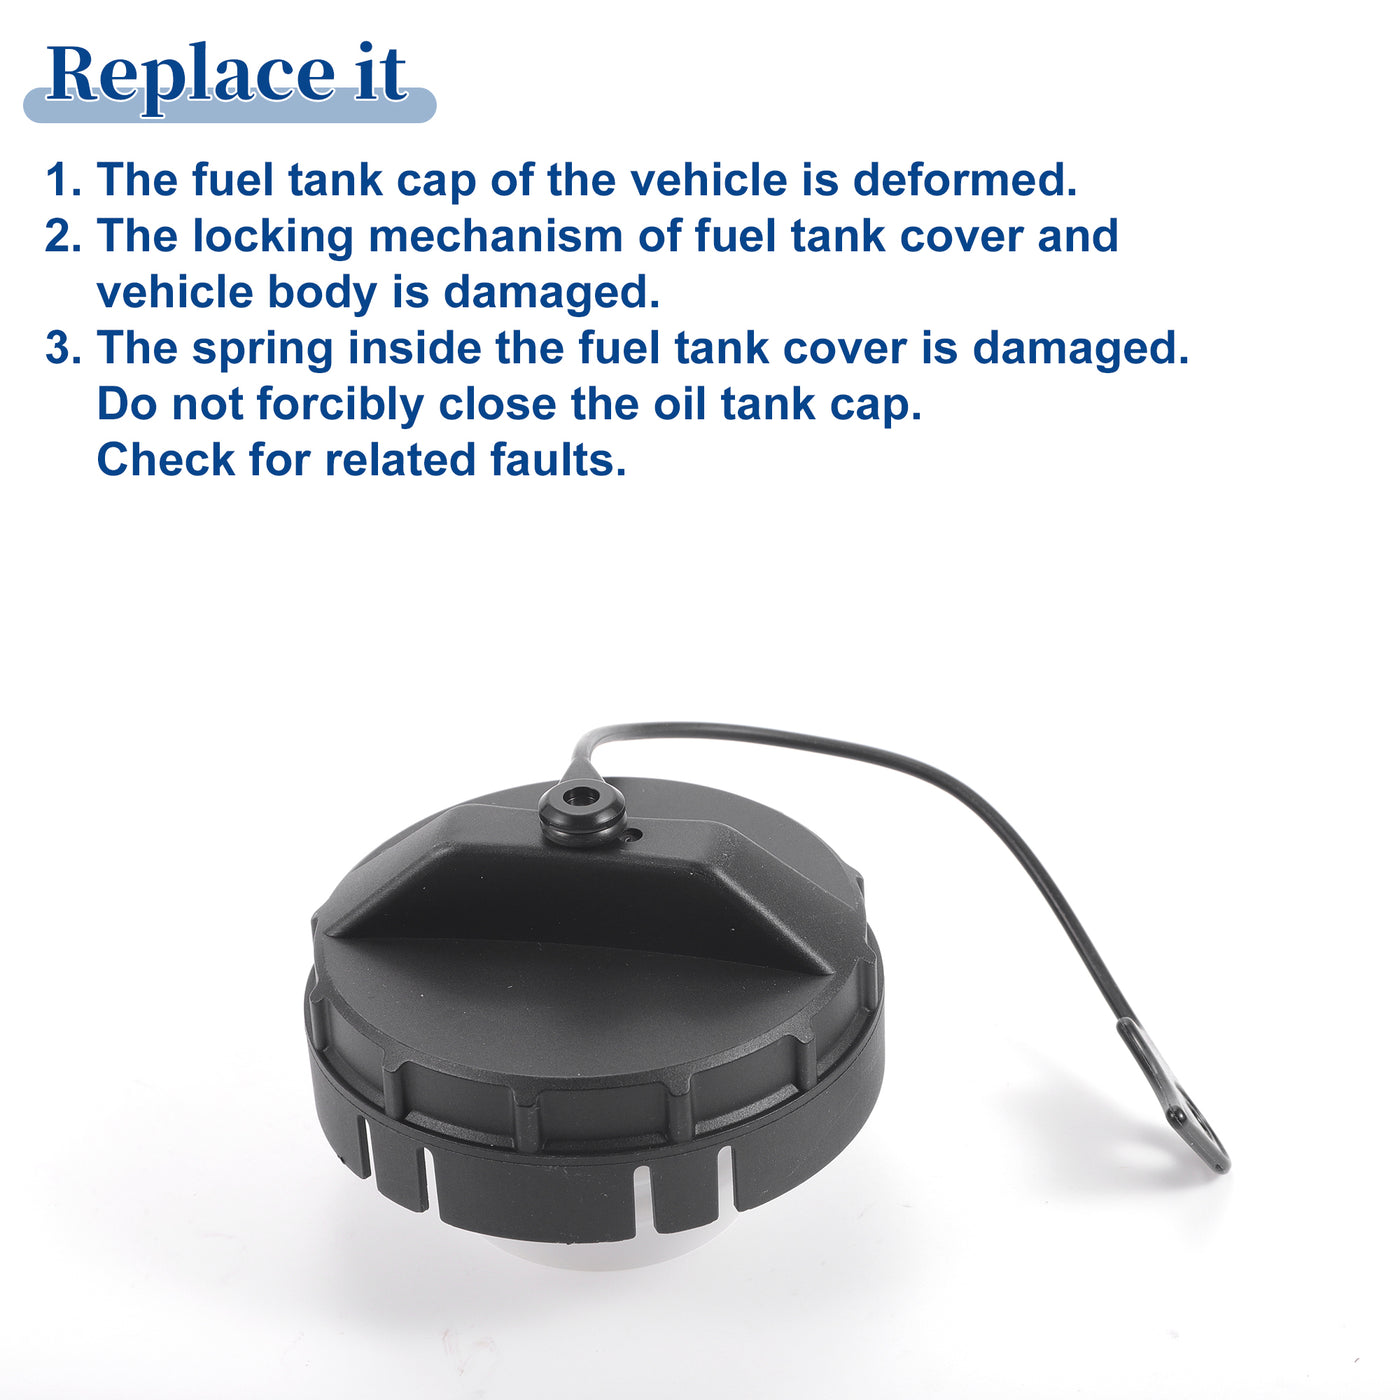 ACROPIX Plastic Gas Fuel Cap Fuel Tank Cap Black Fit for Mitsubishi Outlander III PHEV Hybrid 2015 No.1711A014 - Pack of 1